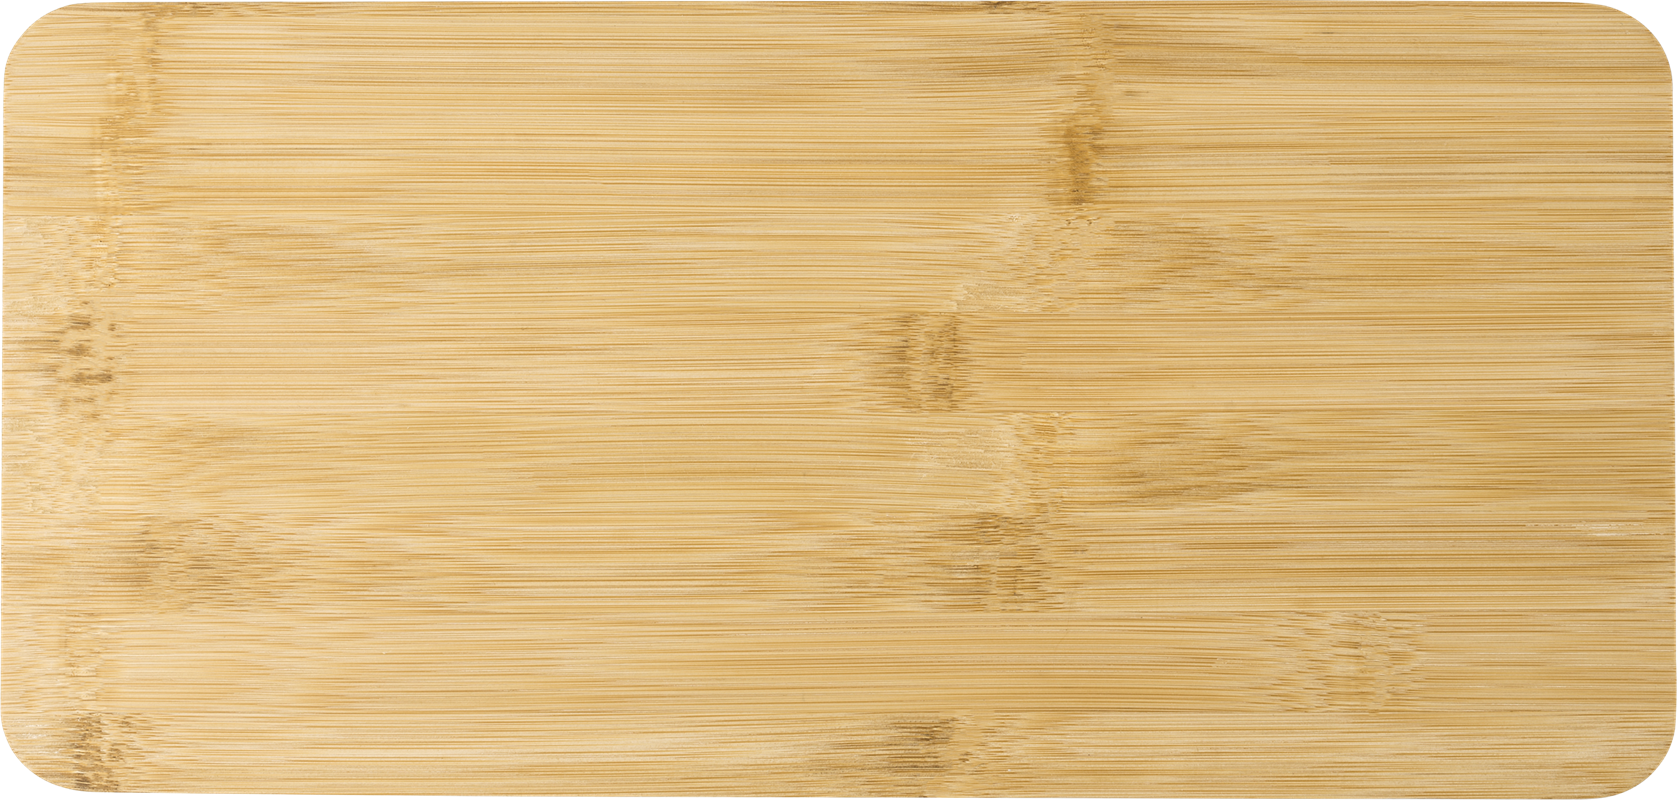 Bamboo cheese board 709536_011 (Brown)